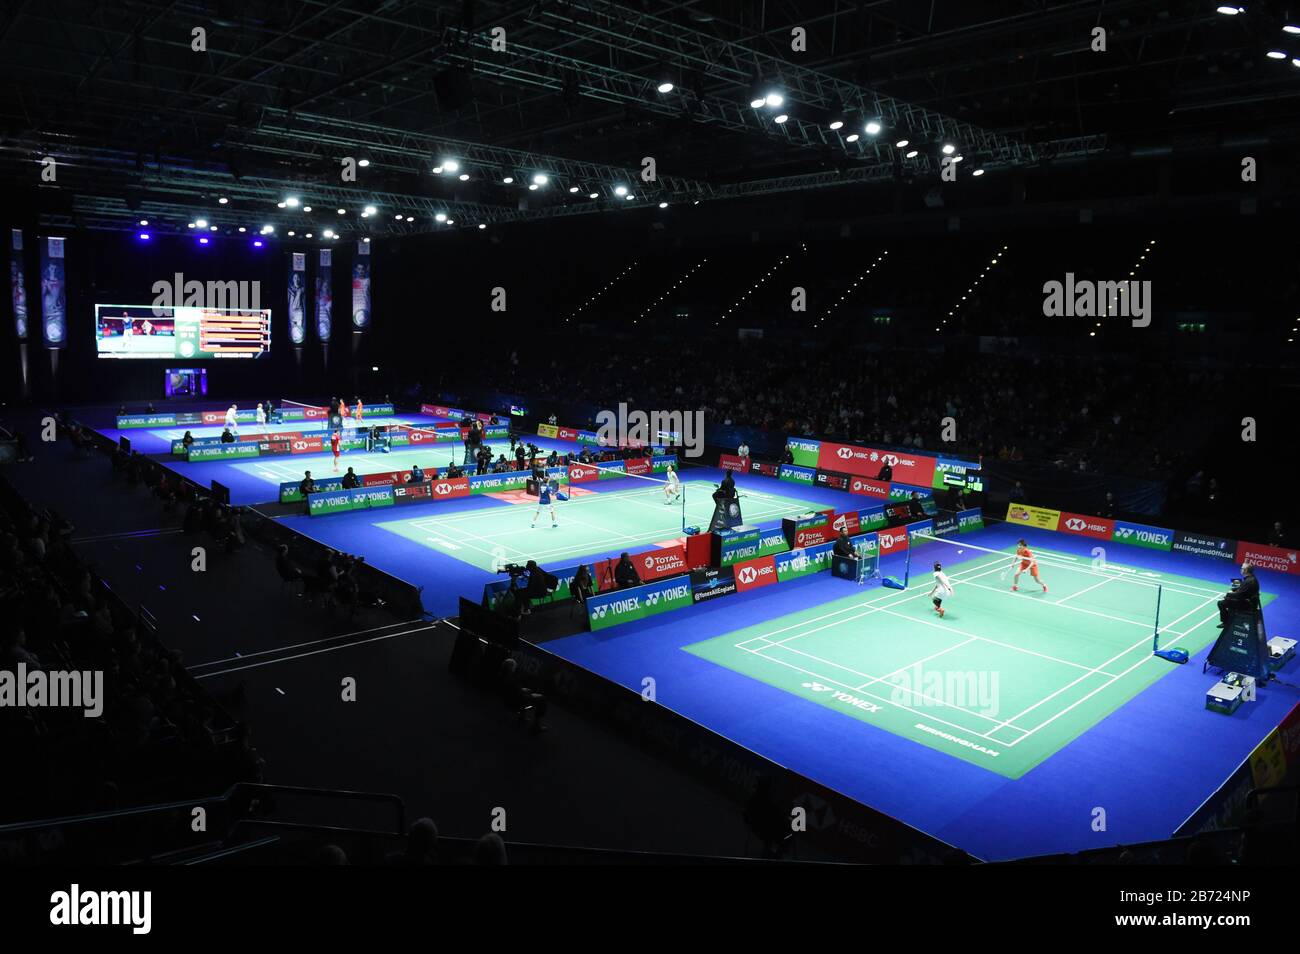 live arena badminton